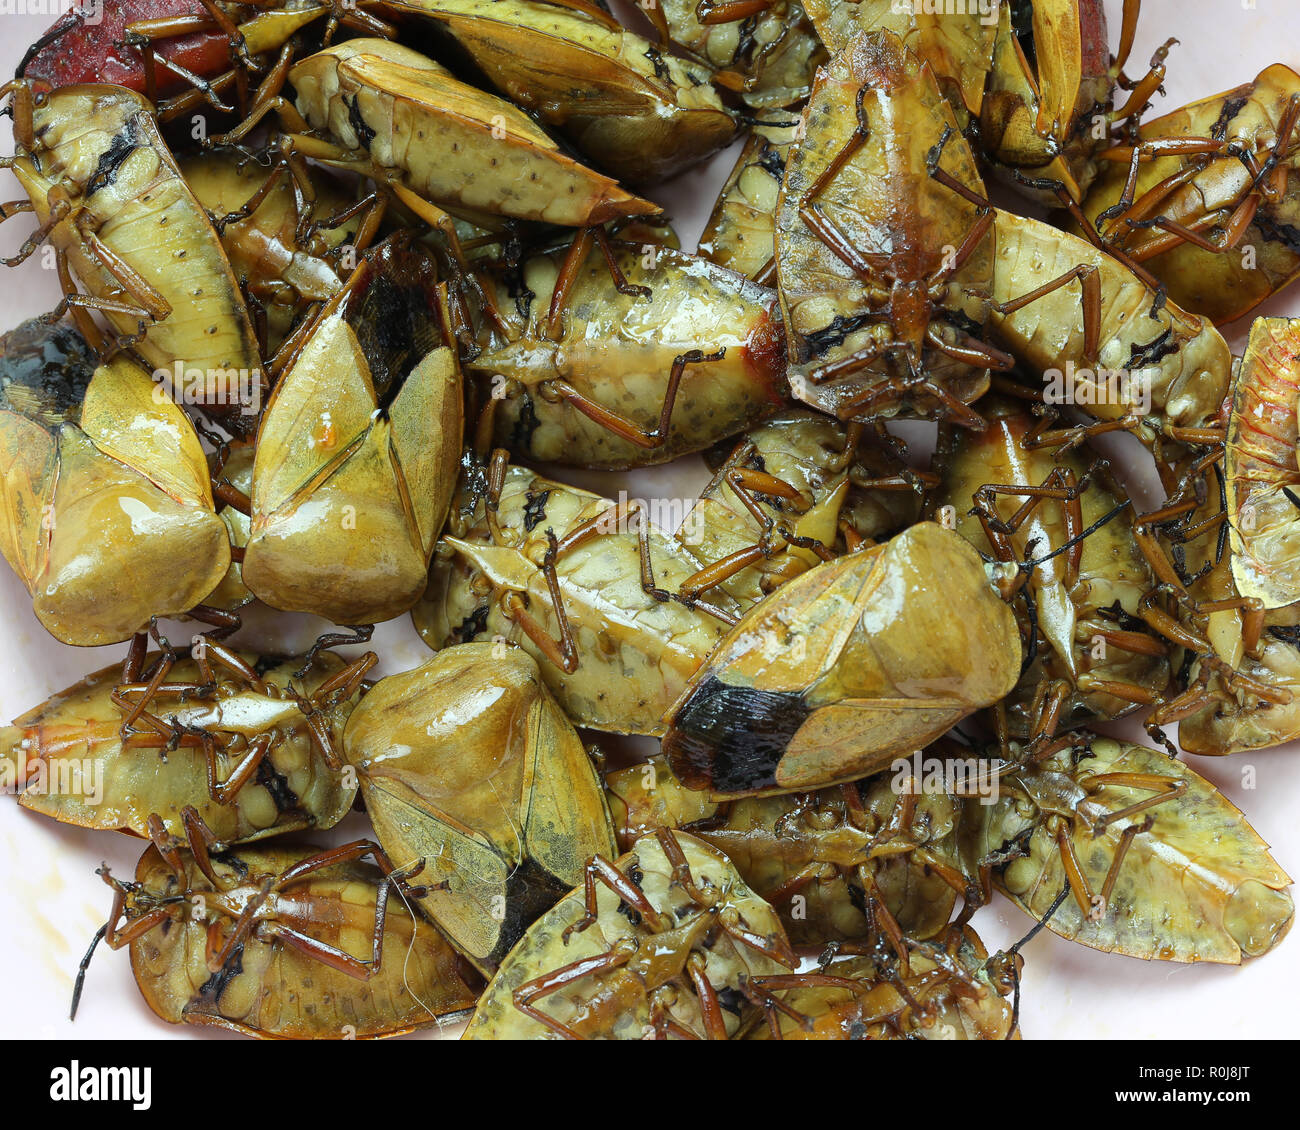 Il Tessaratoma papillosa o Homoeocerus sp di fritto,questo cibo è stata popolare nel nord-est della Thailandia. Foto Stock